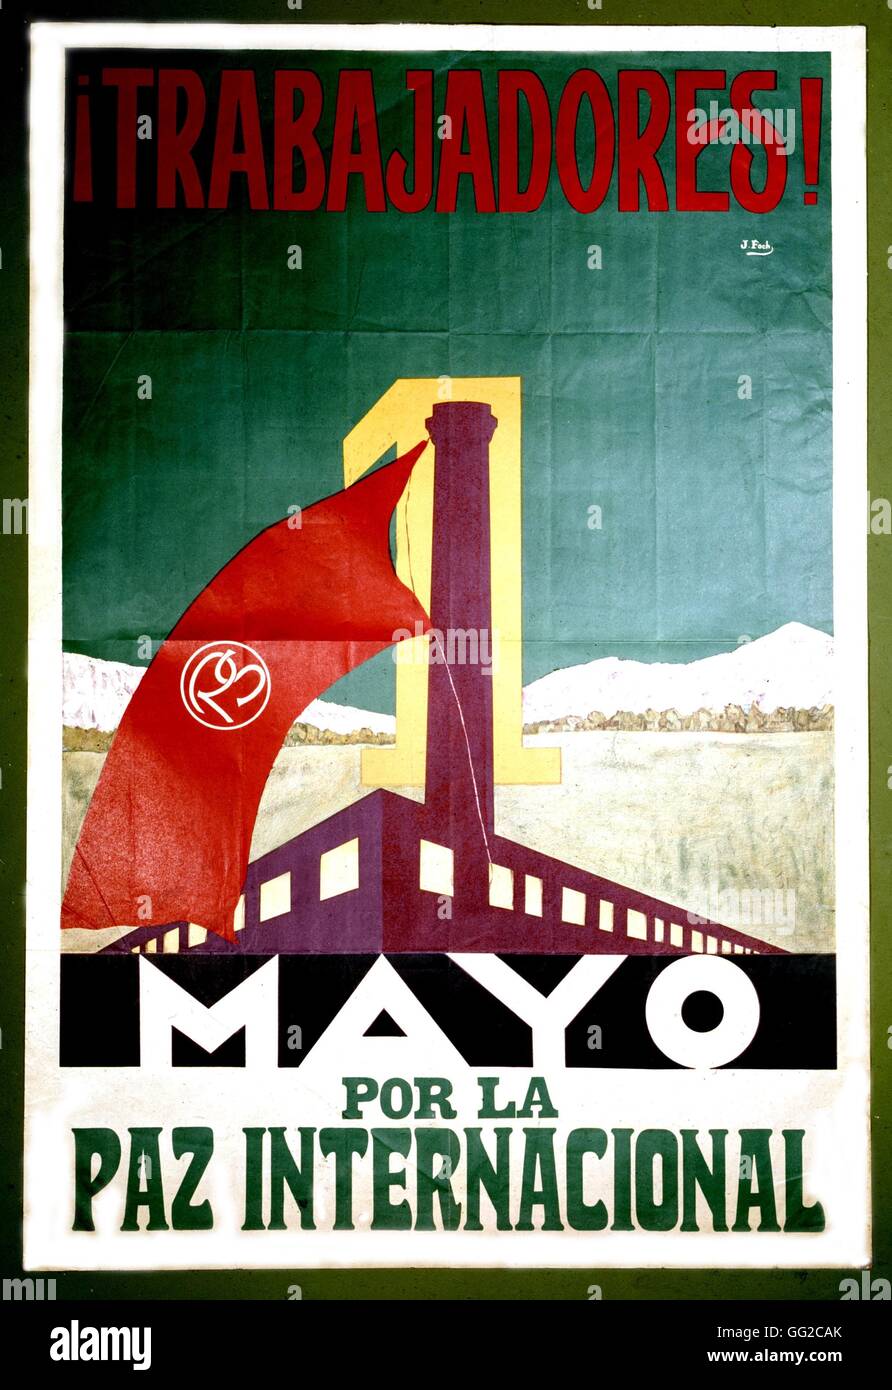 Sozialistischen Plakat Socialiste Aufruf Latein-amerikanische Arbeiter um Maifeiertag Frieden c.1930 Lateinamerika Amsterdam zu widmen. Institut für Geschichte Stockfoto